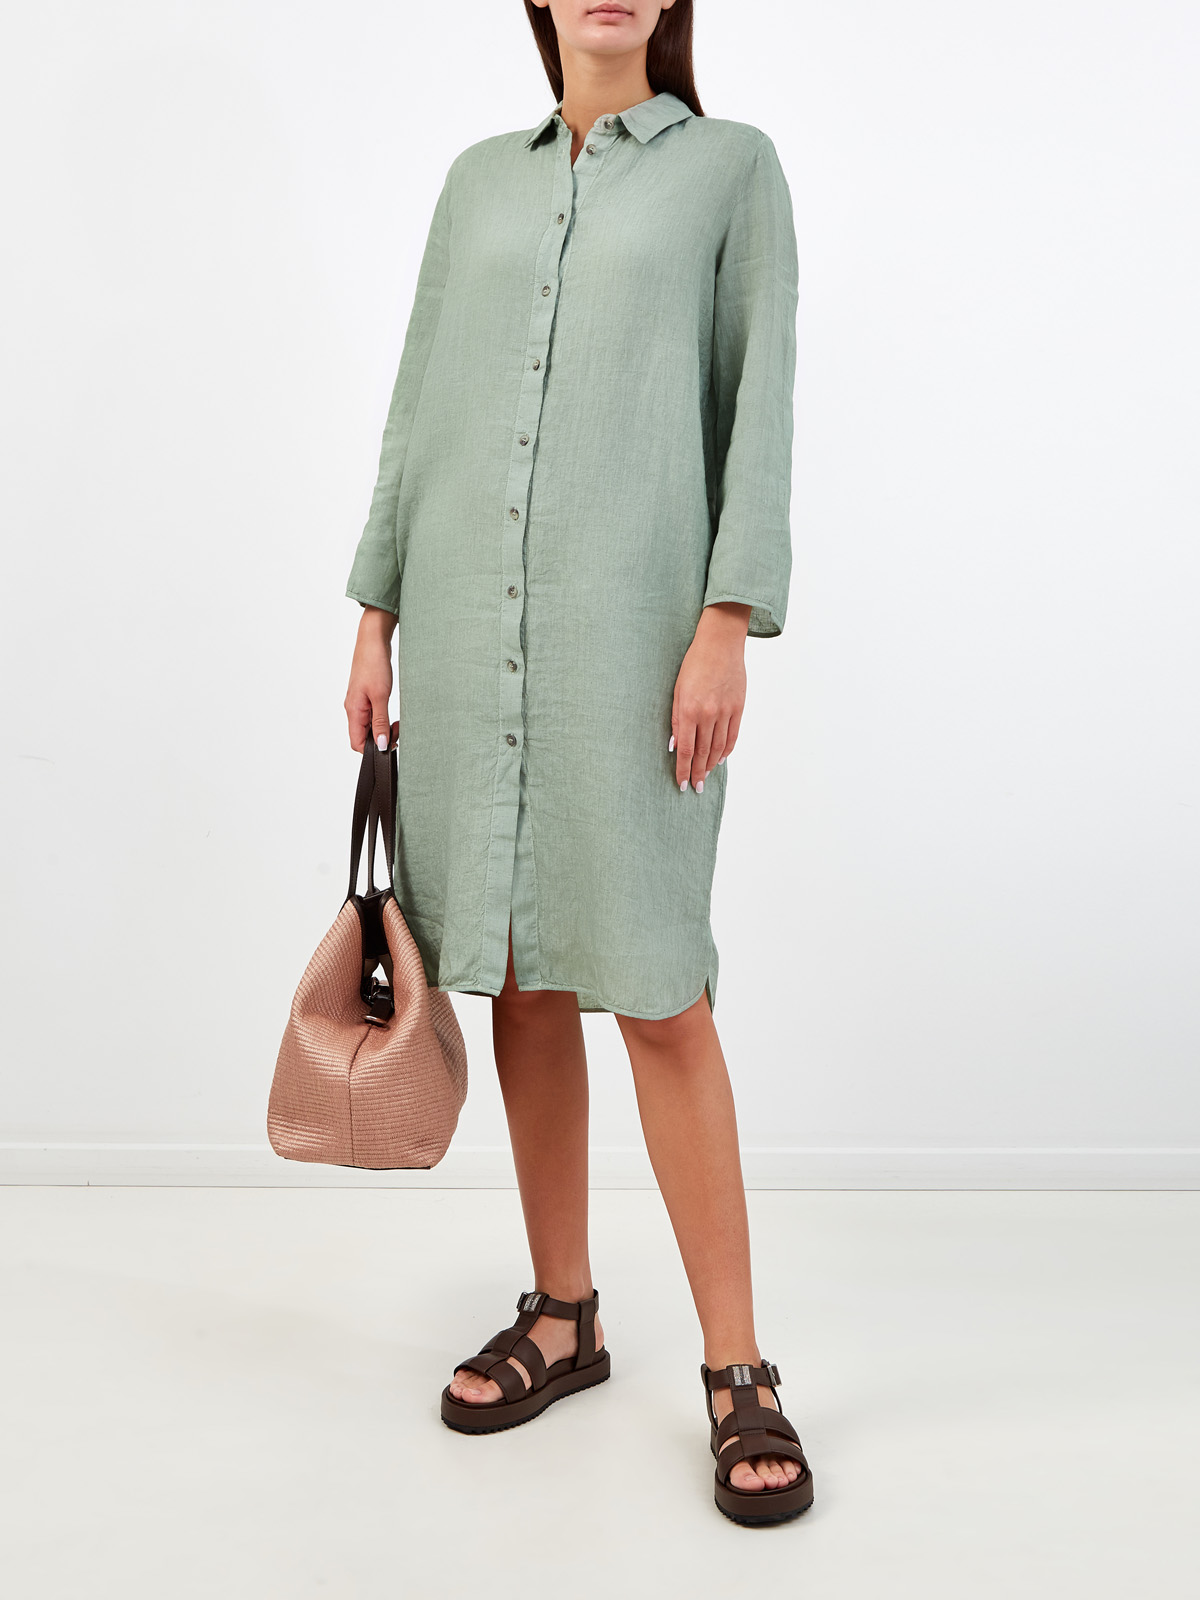 Платье-рубашка из дышащей льняной ткани GRAN SASSO, цвет зеленый, размер 40;42;44;48 - фото 2